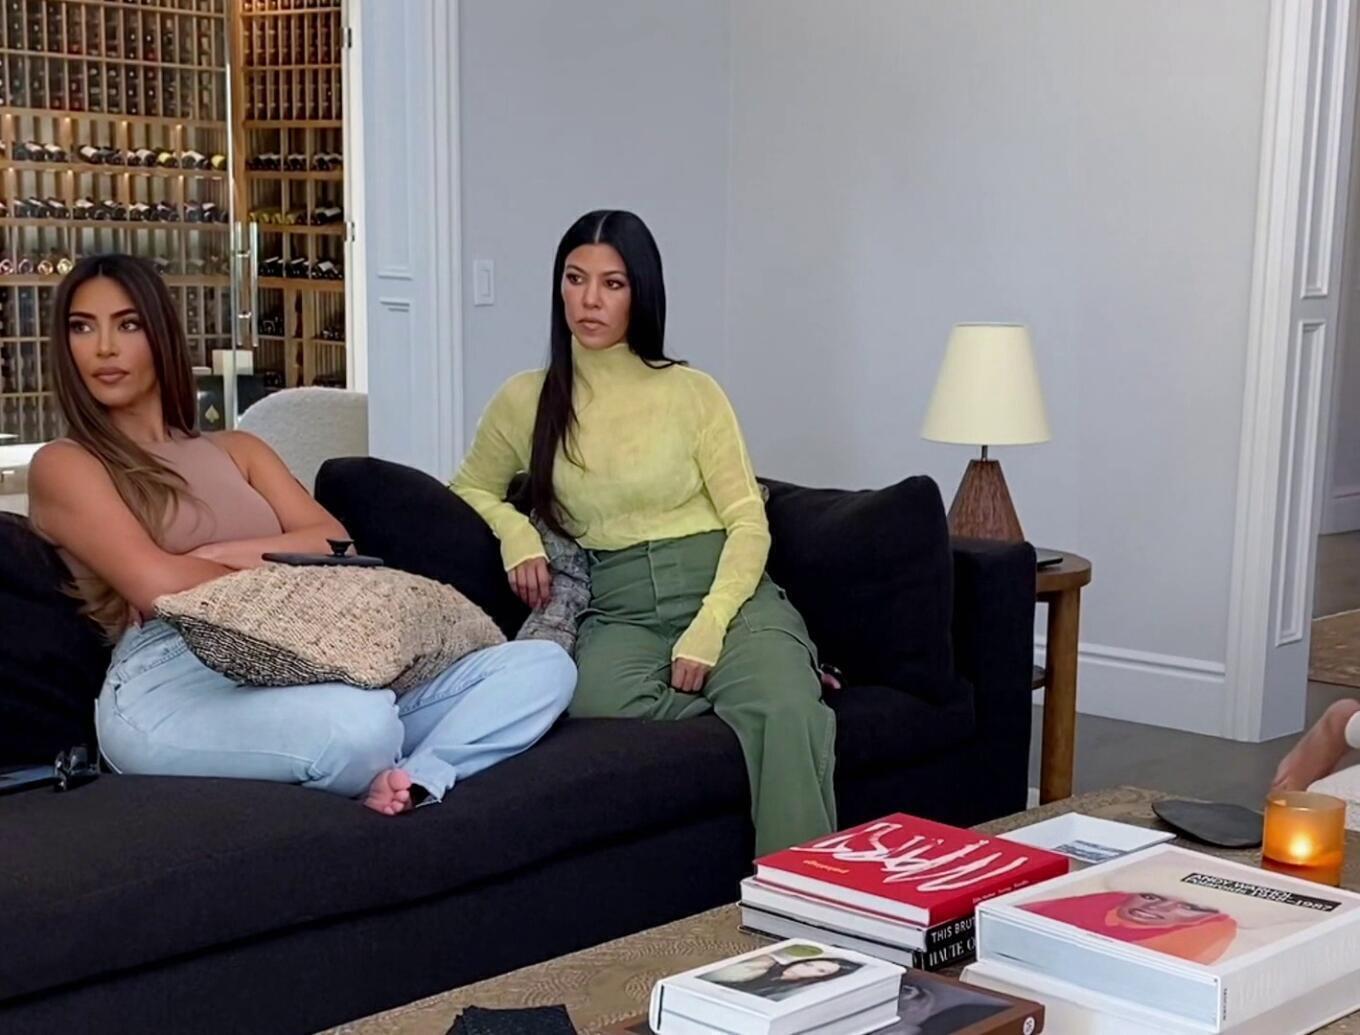 Kourtney Kardashian - Keeping Up With The Kardashians | Season 20 Episode 7 | Kim Kardashian style